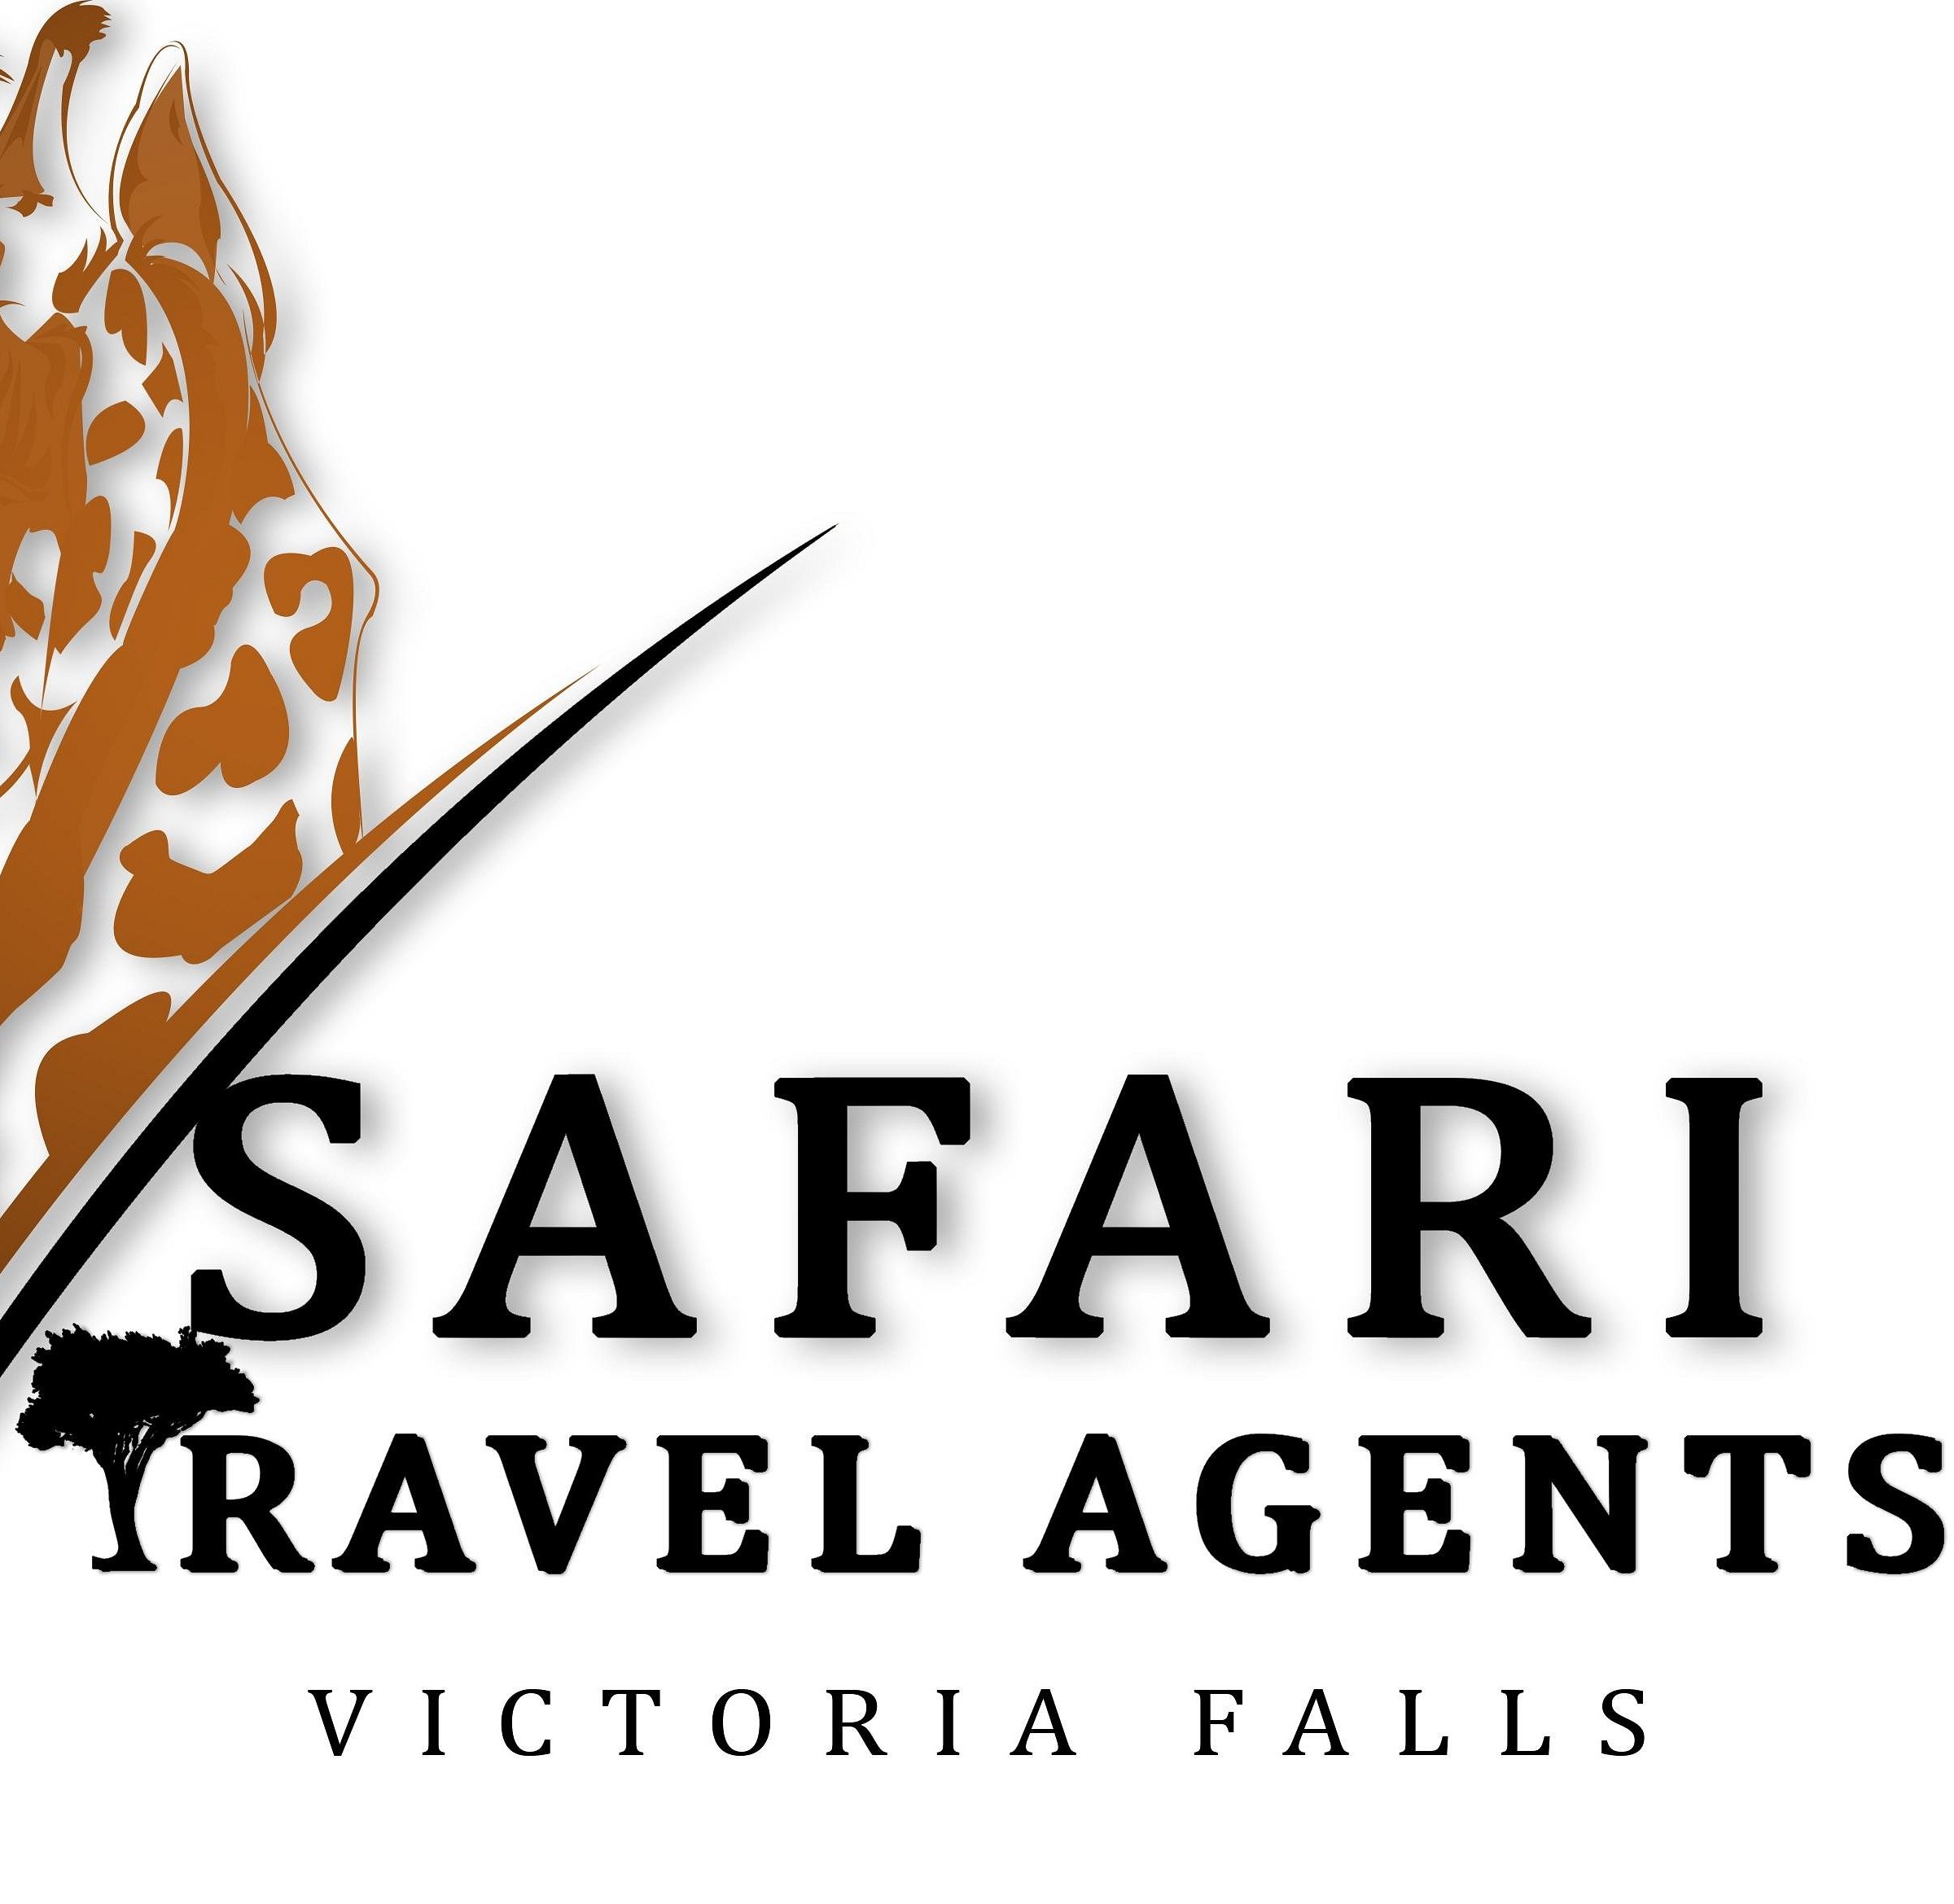 victoria falls travel agents